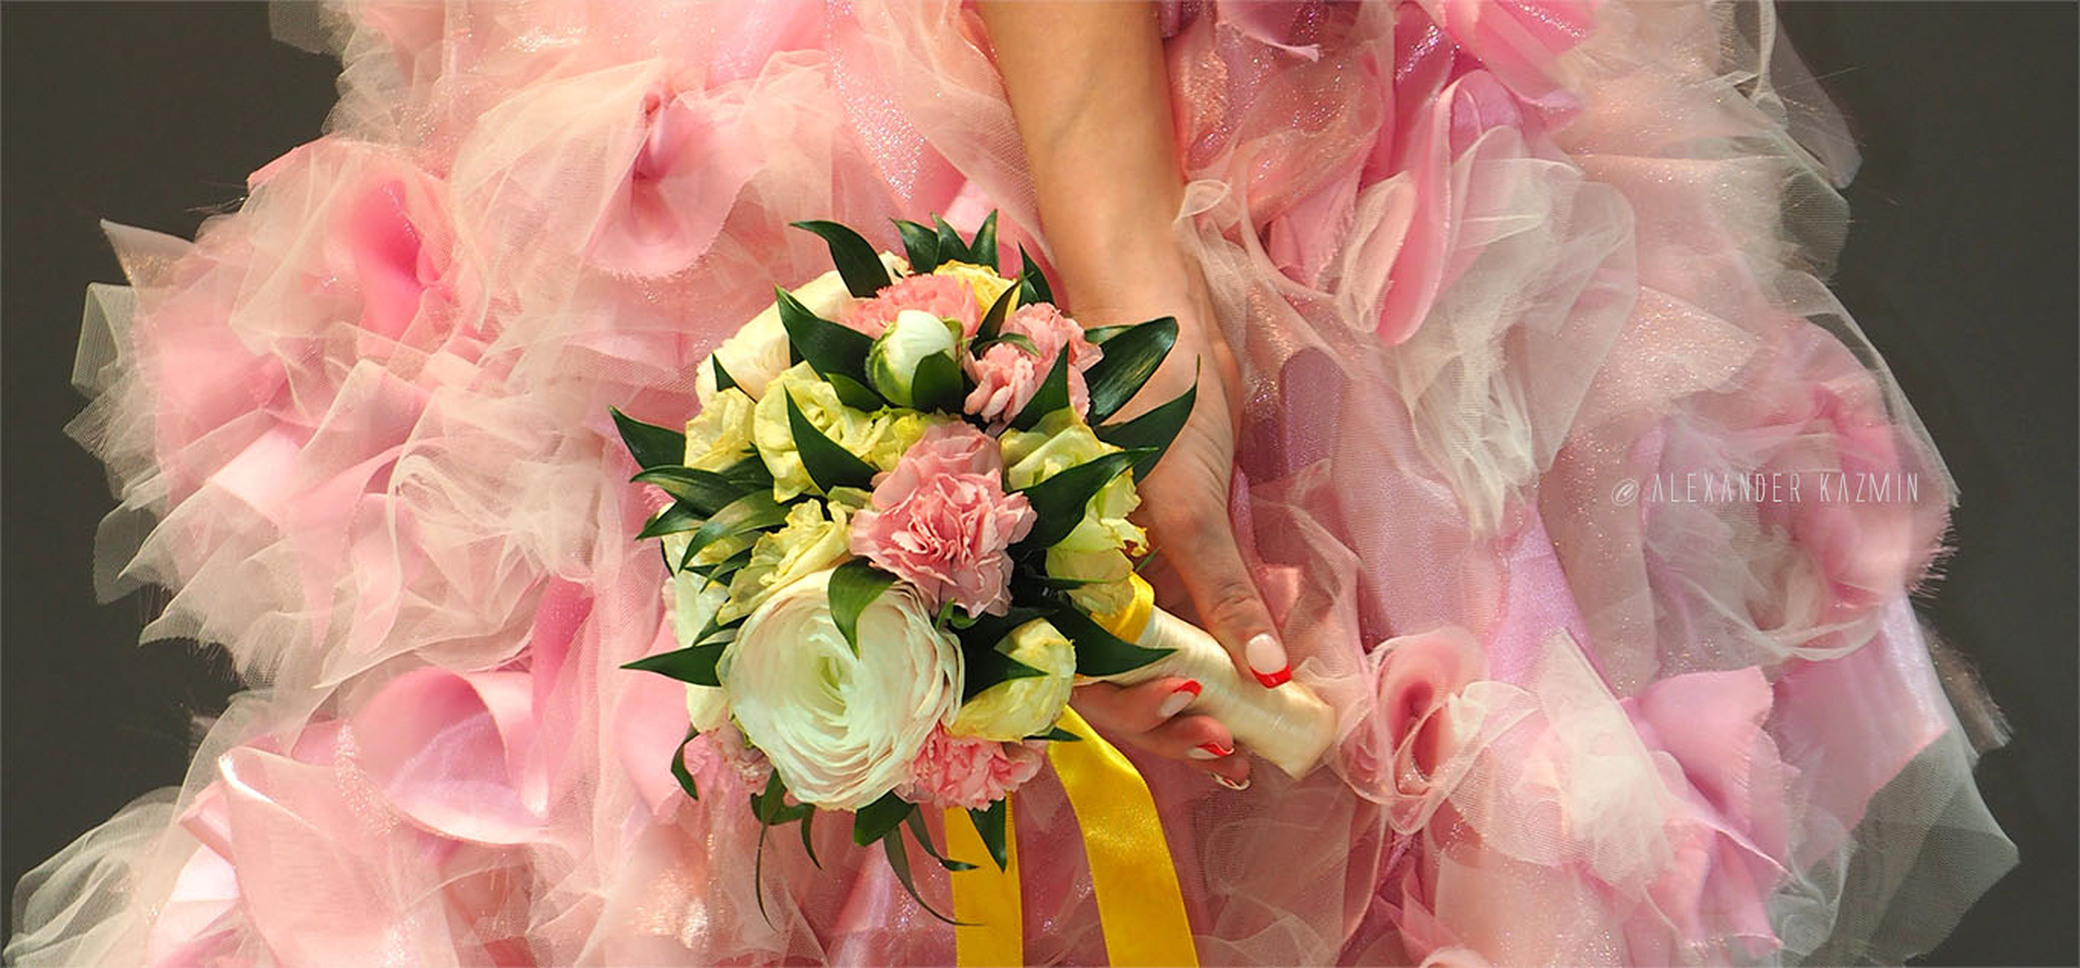 Платье Невесты и Букет  Braid's Wear & Bouquet